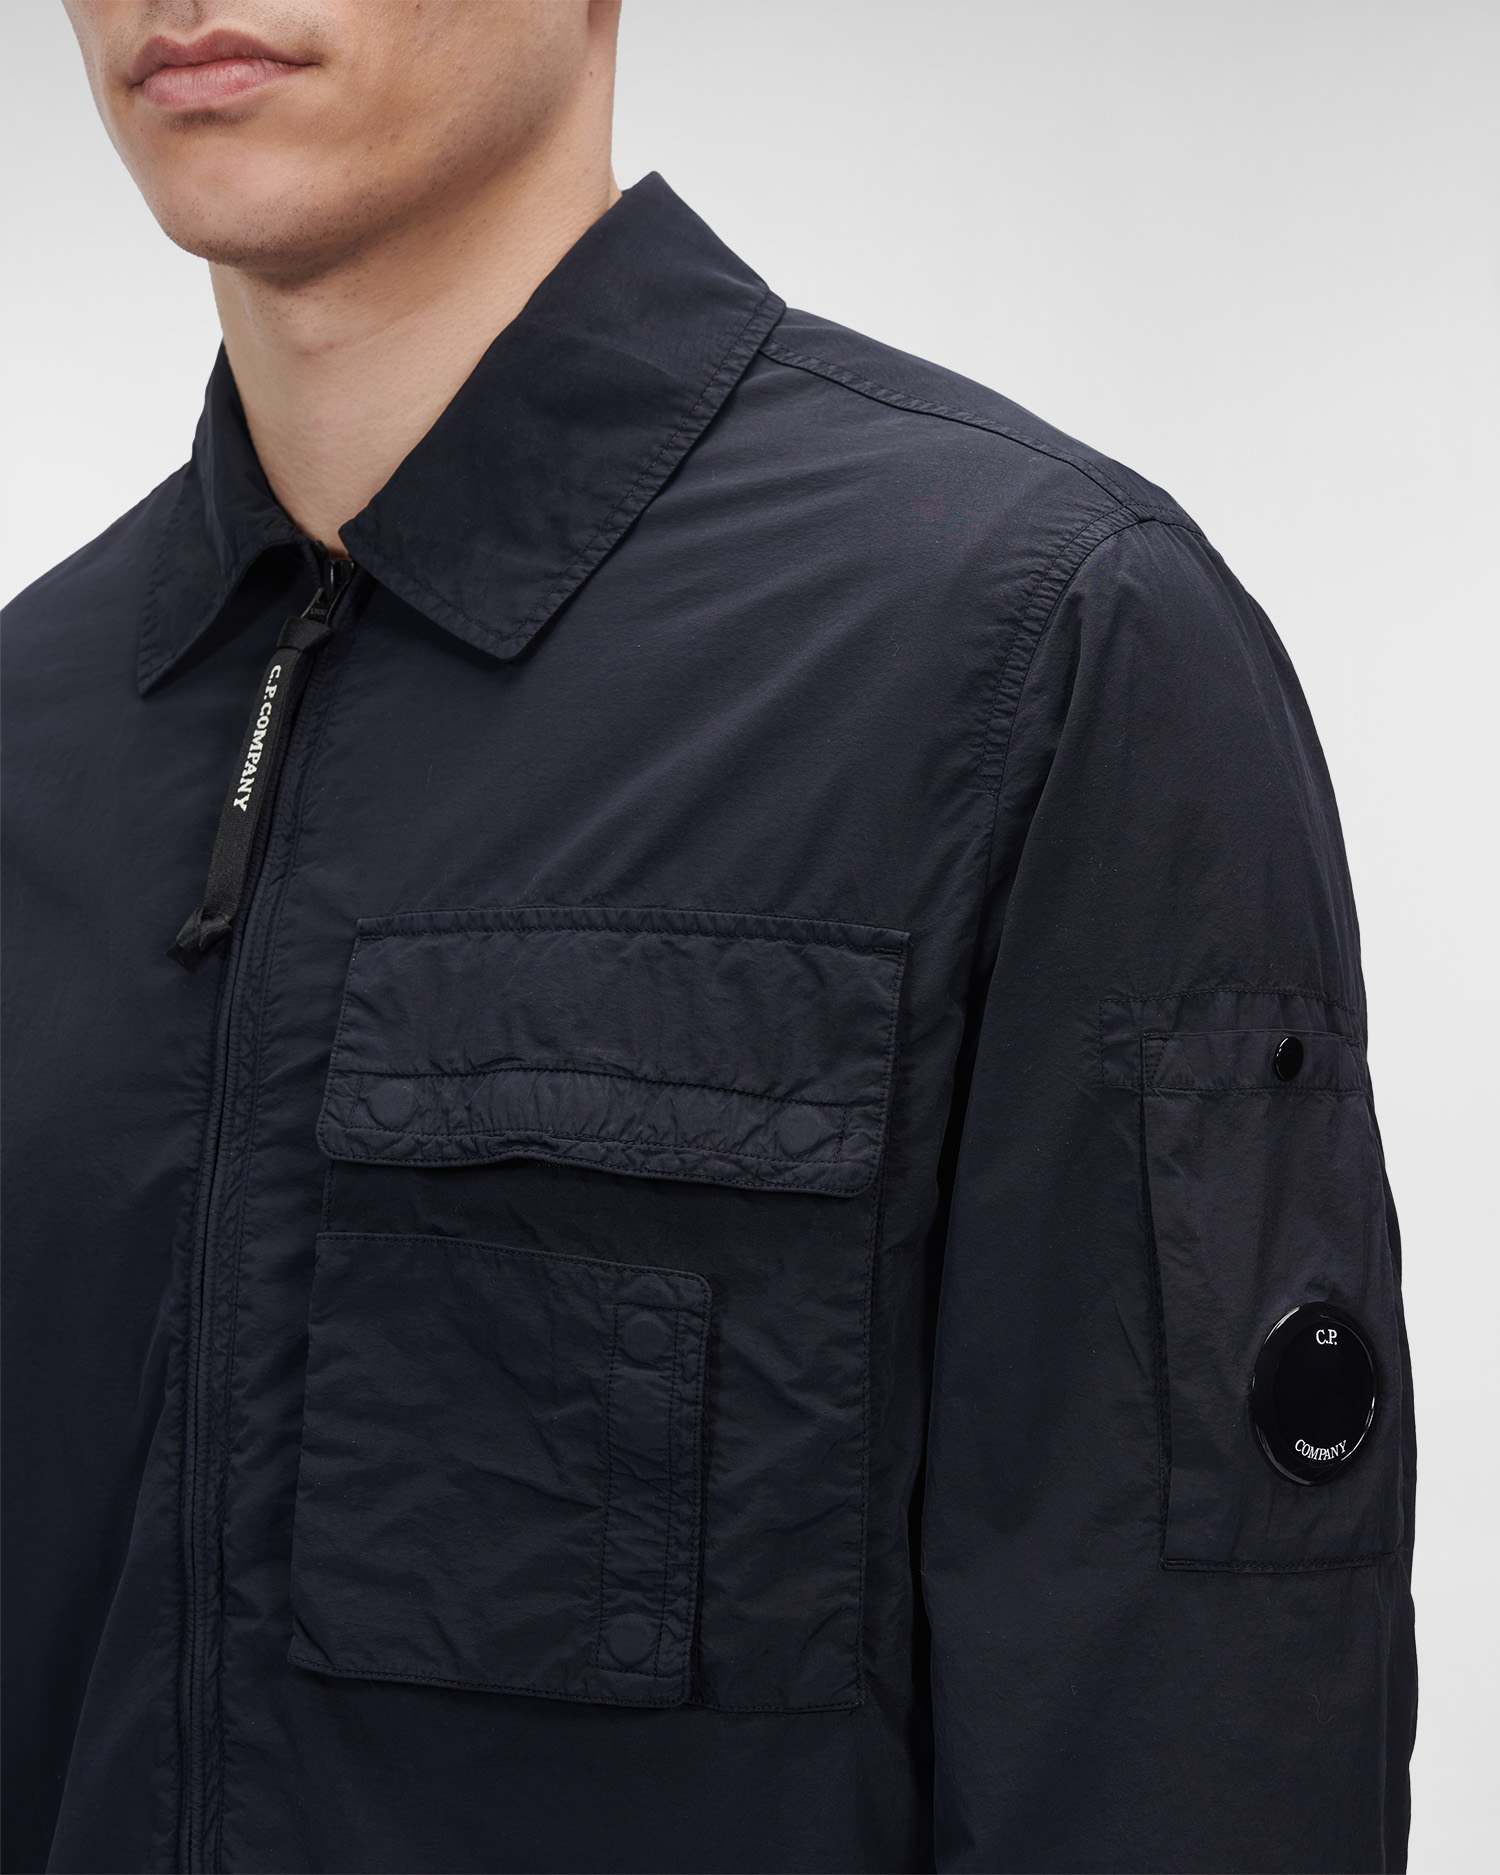 Flatt Nylon Zipped Overshirt | C.P. Company Online Store